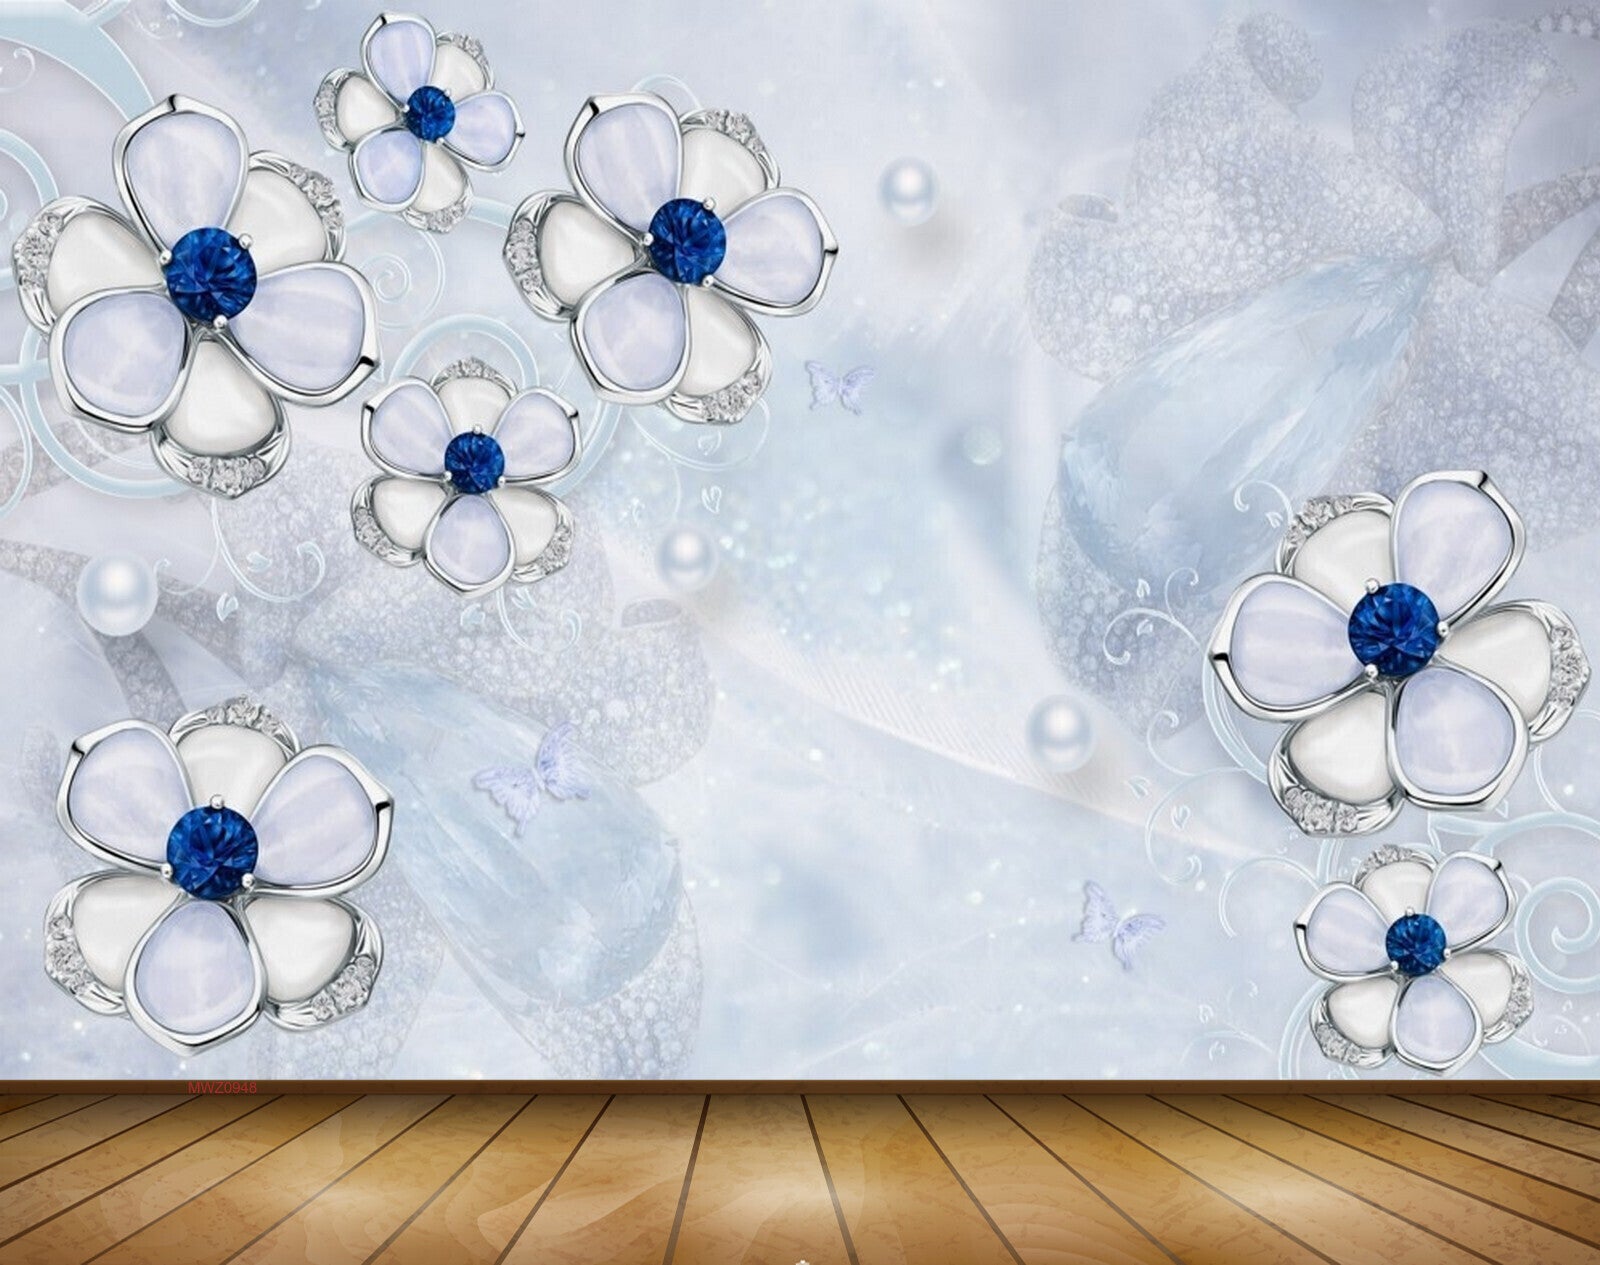 Avikalp MWZ0948 White Blue Flowers Butterflies 3D HD Wallpaper